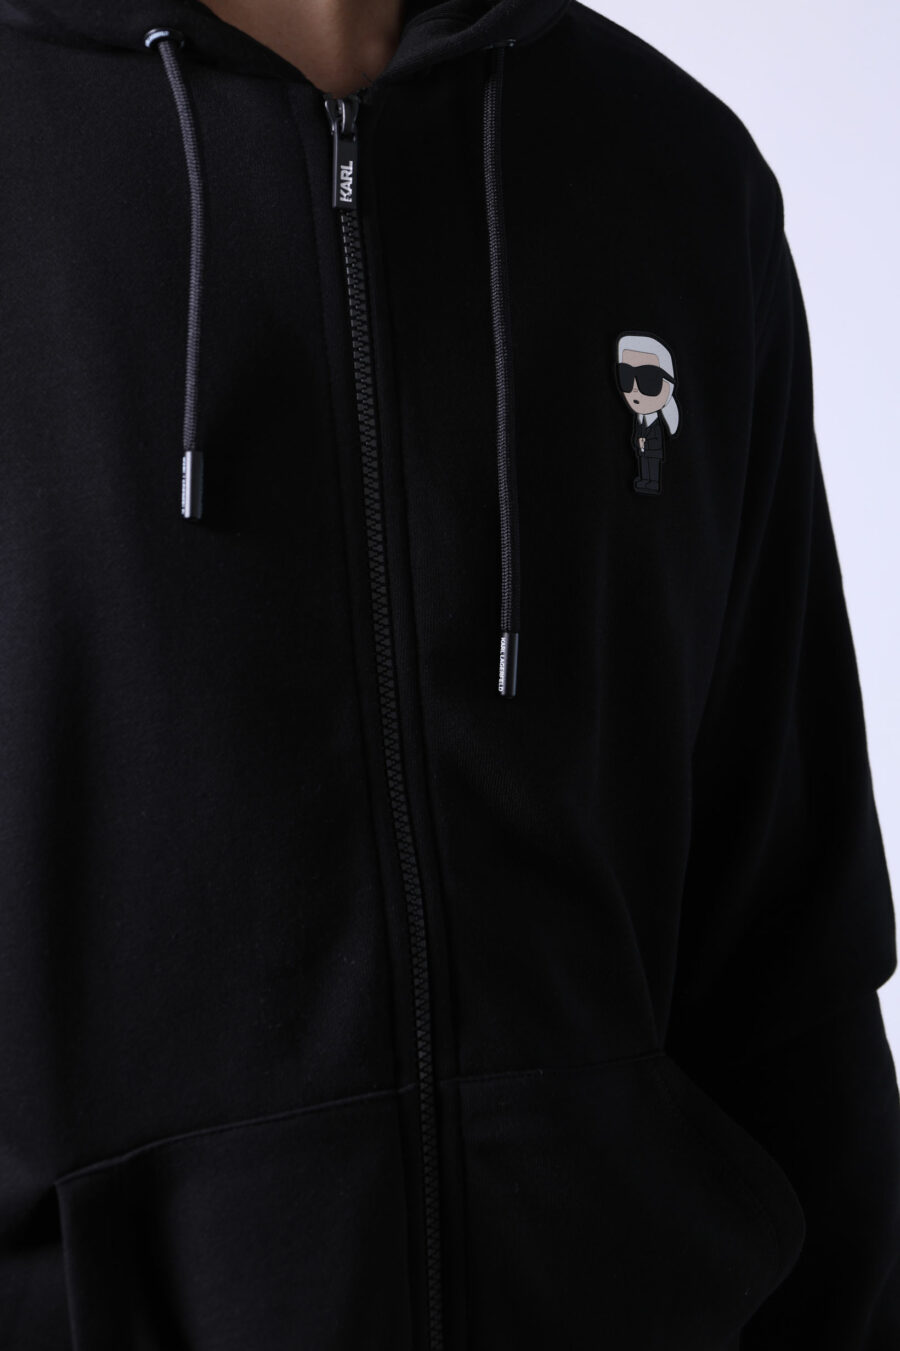 Camisola com capuz preta com fechos de correr e mini-logotipo em borracha - Untitled Catalog 05741